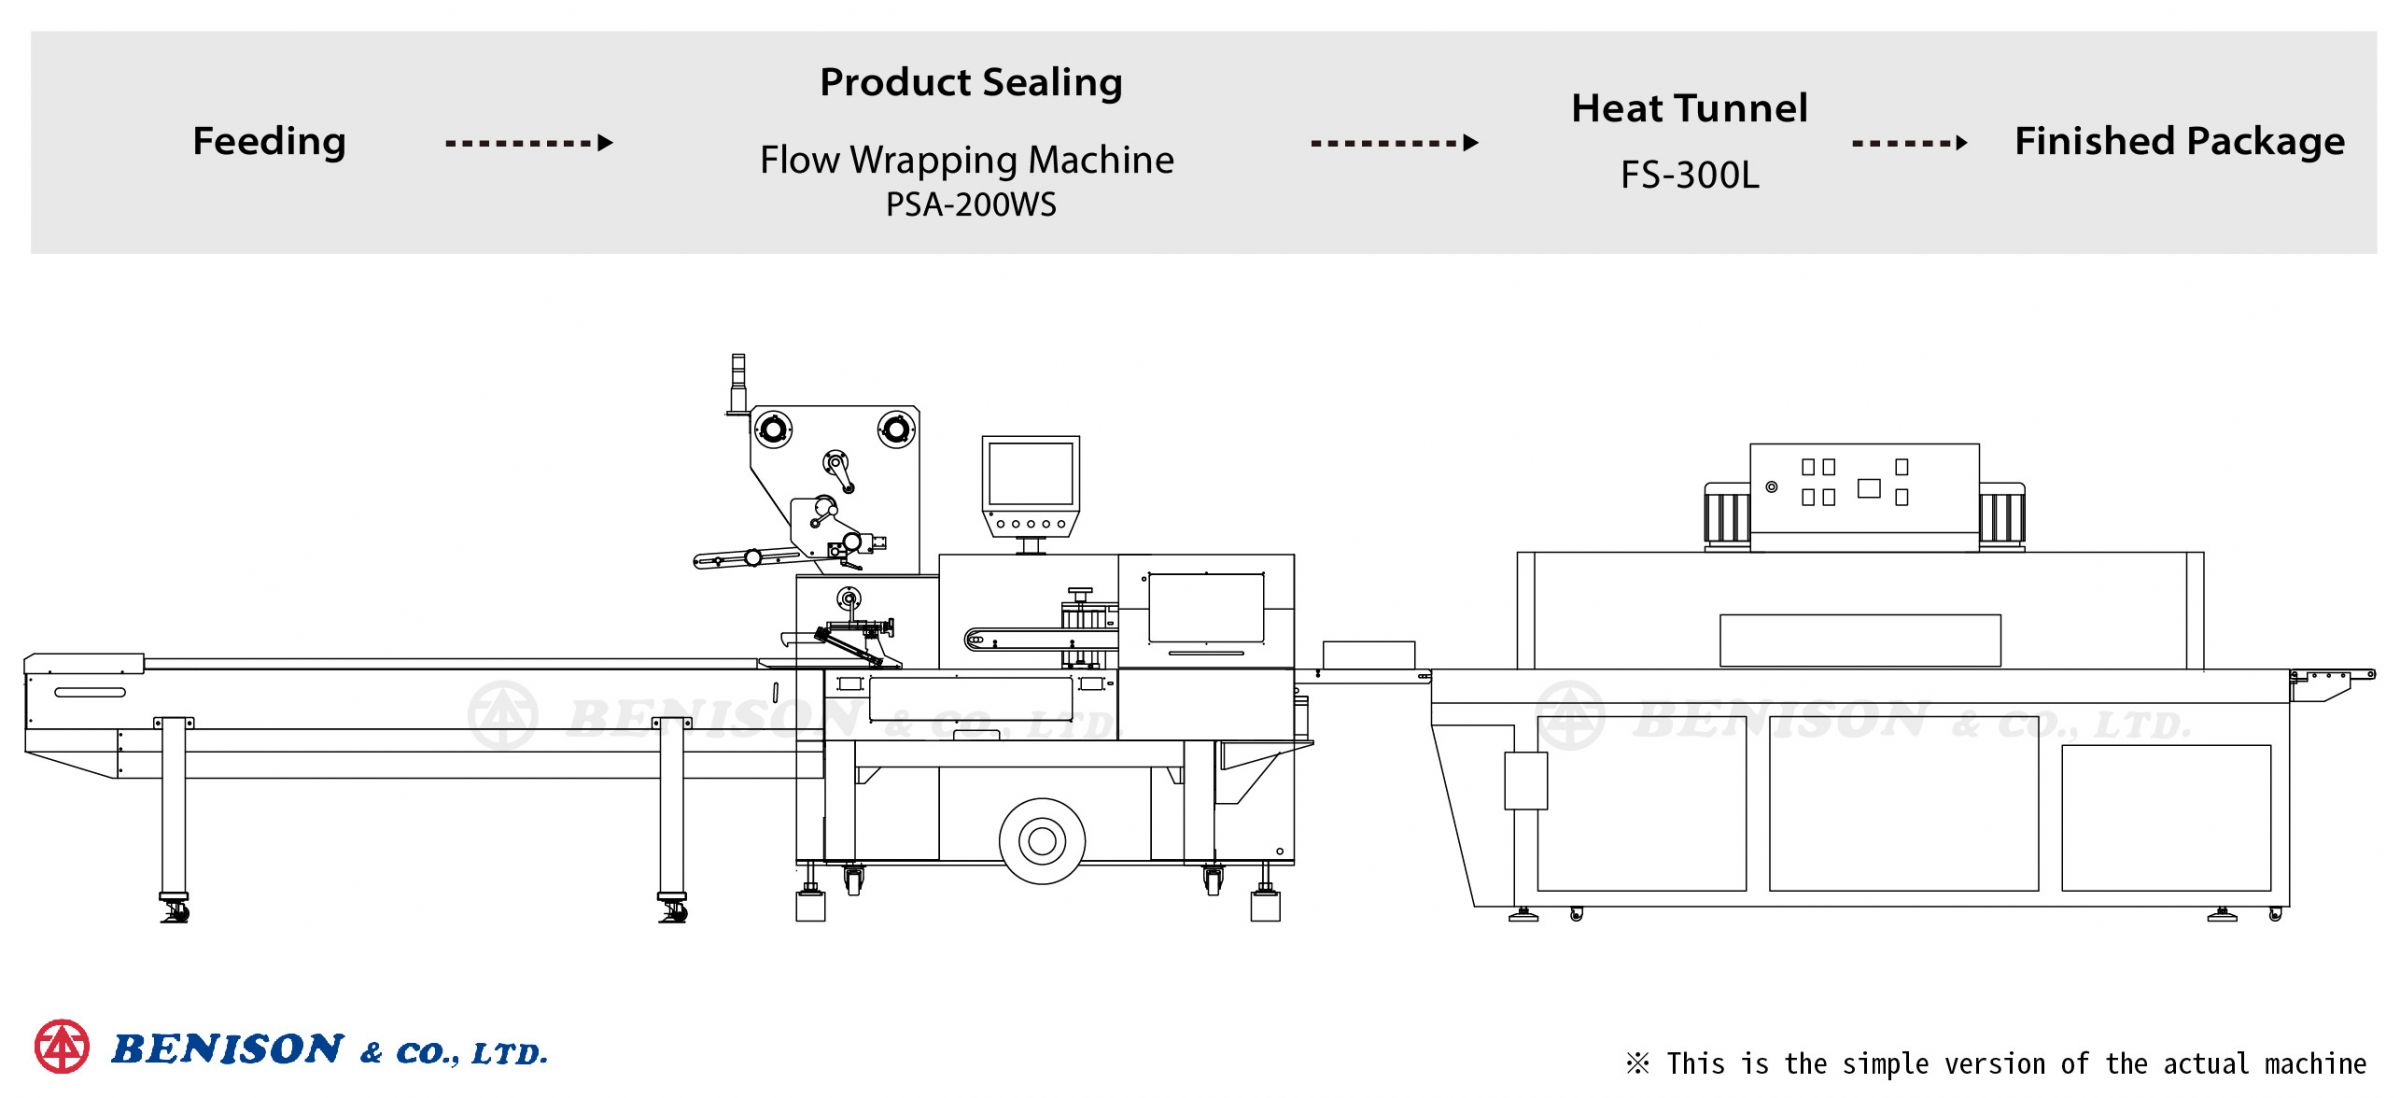 Máquina de Embalagem Flow Wrapping PSA-200WS + Túnel de Calor FS-300L para Soluções de Produtos de Tampa de Tomada